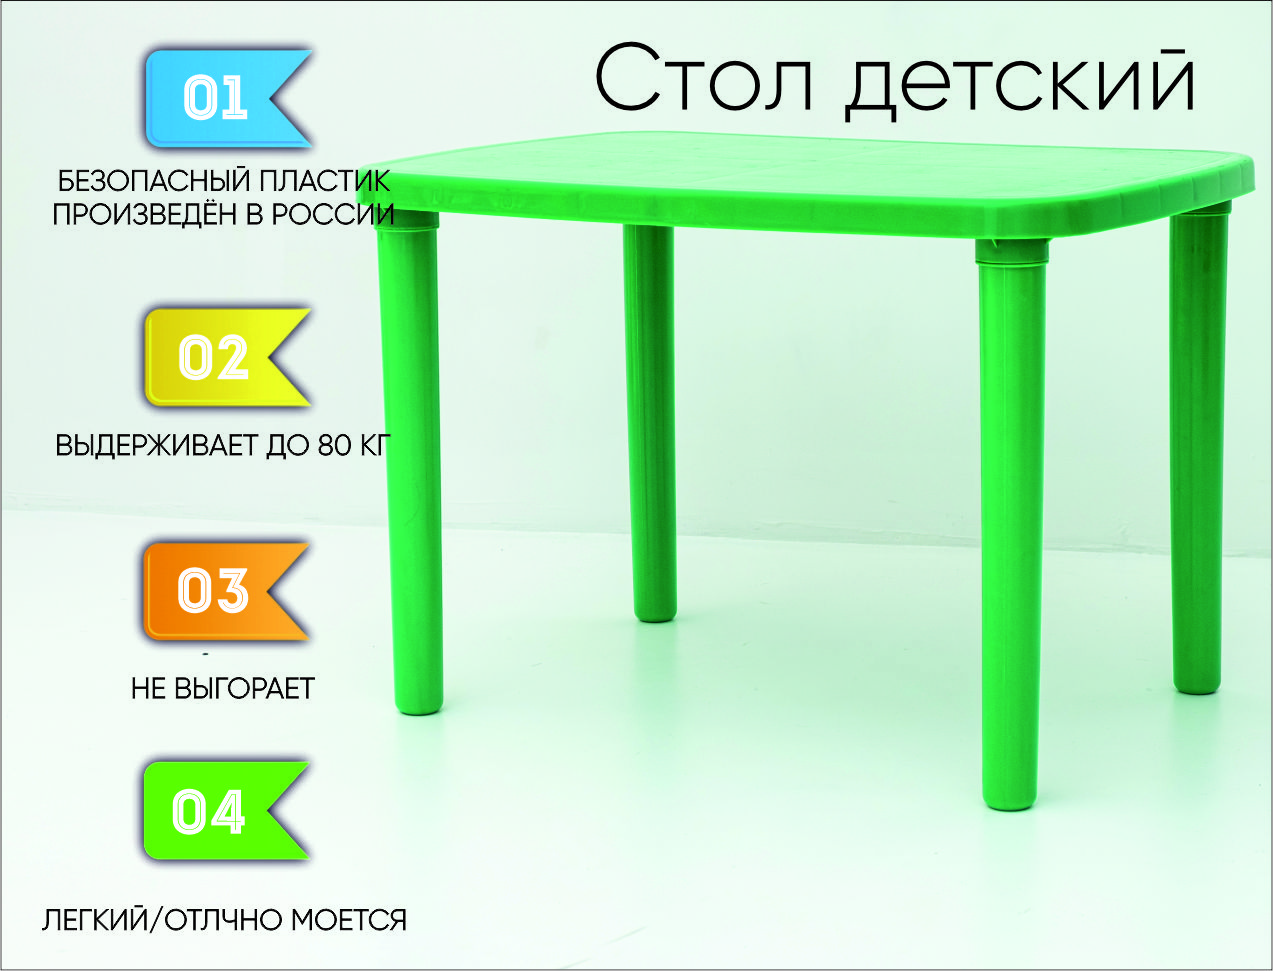 Стол детский пластиковый, зеленый пенниборд пластиковый 22 quot 56x15cm зеленый sk200 sportex d26019